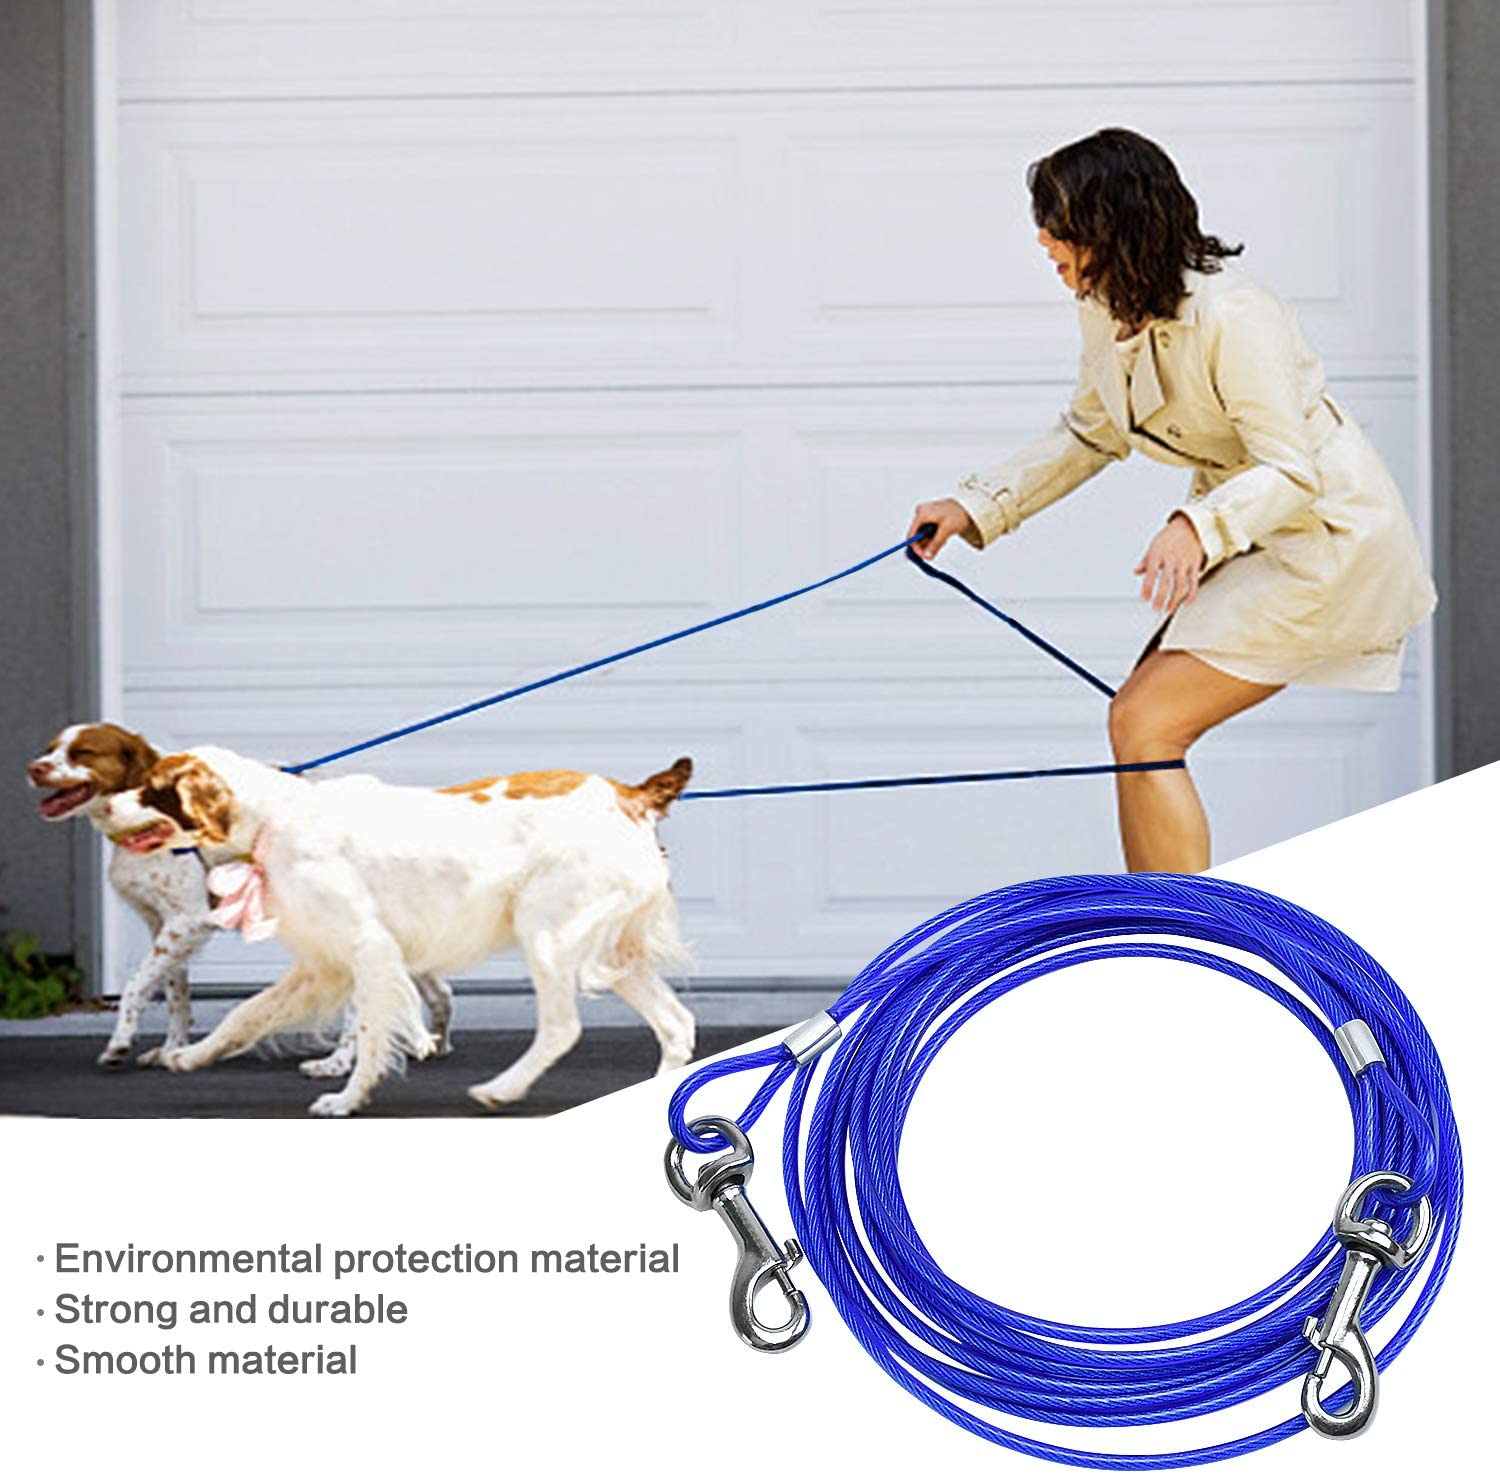  SANTOO 5M Cable para Atar Perros, Cuerda de Seguridad Cabezas Dobles para Mascotas hasta 45 kg 